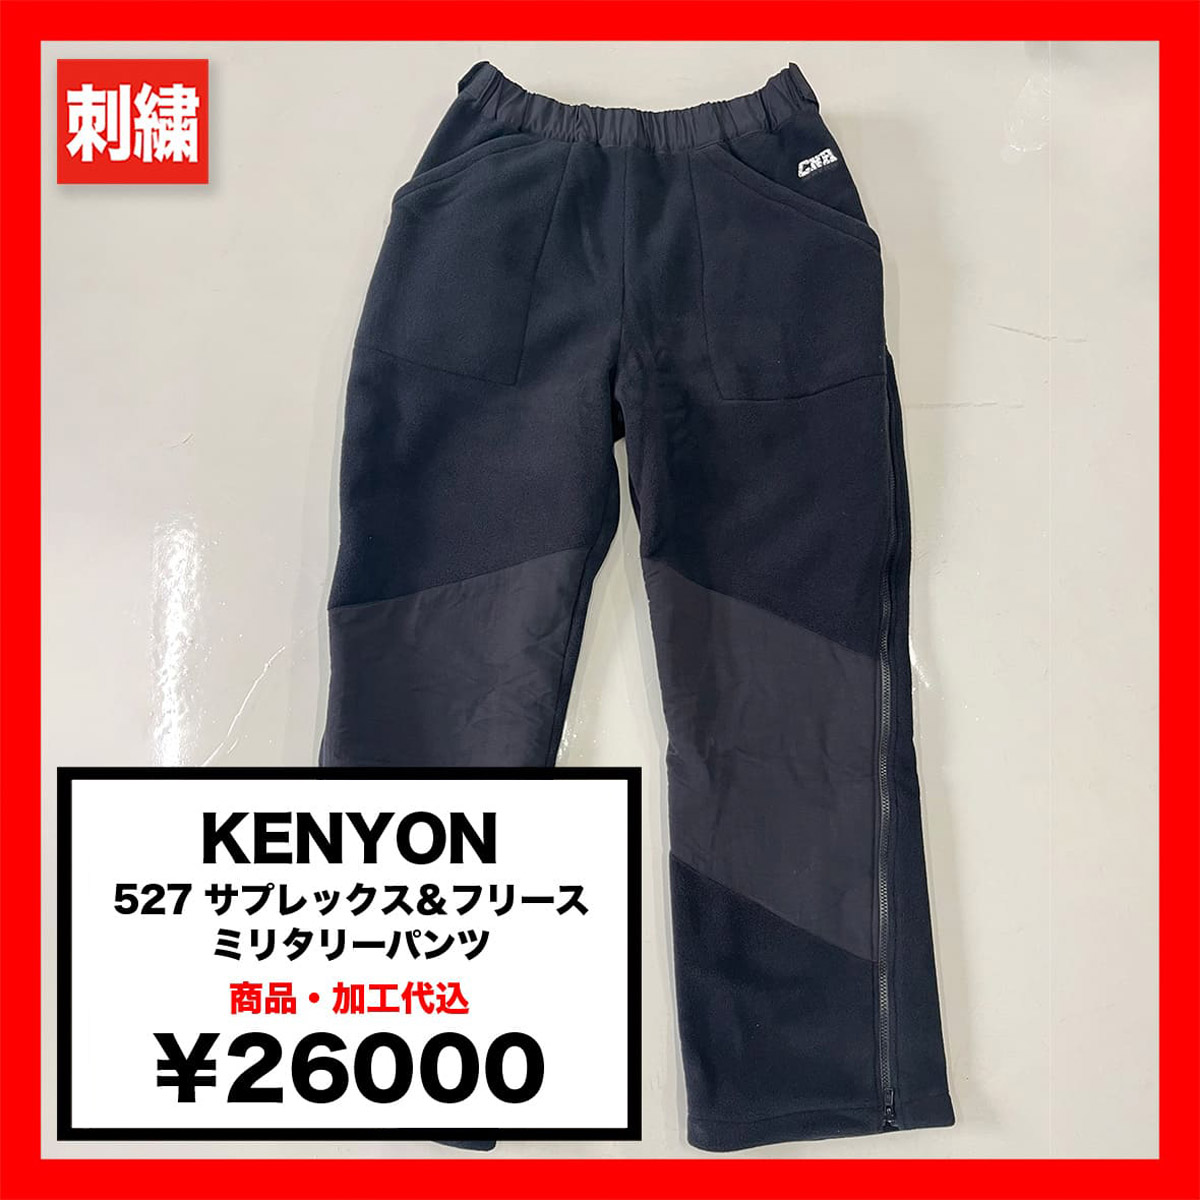 KENYON 527 サプレックス&フリース ミリタリーパンツ (品番KENYON-527)